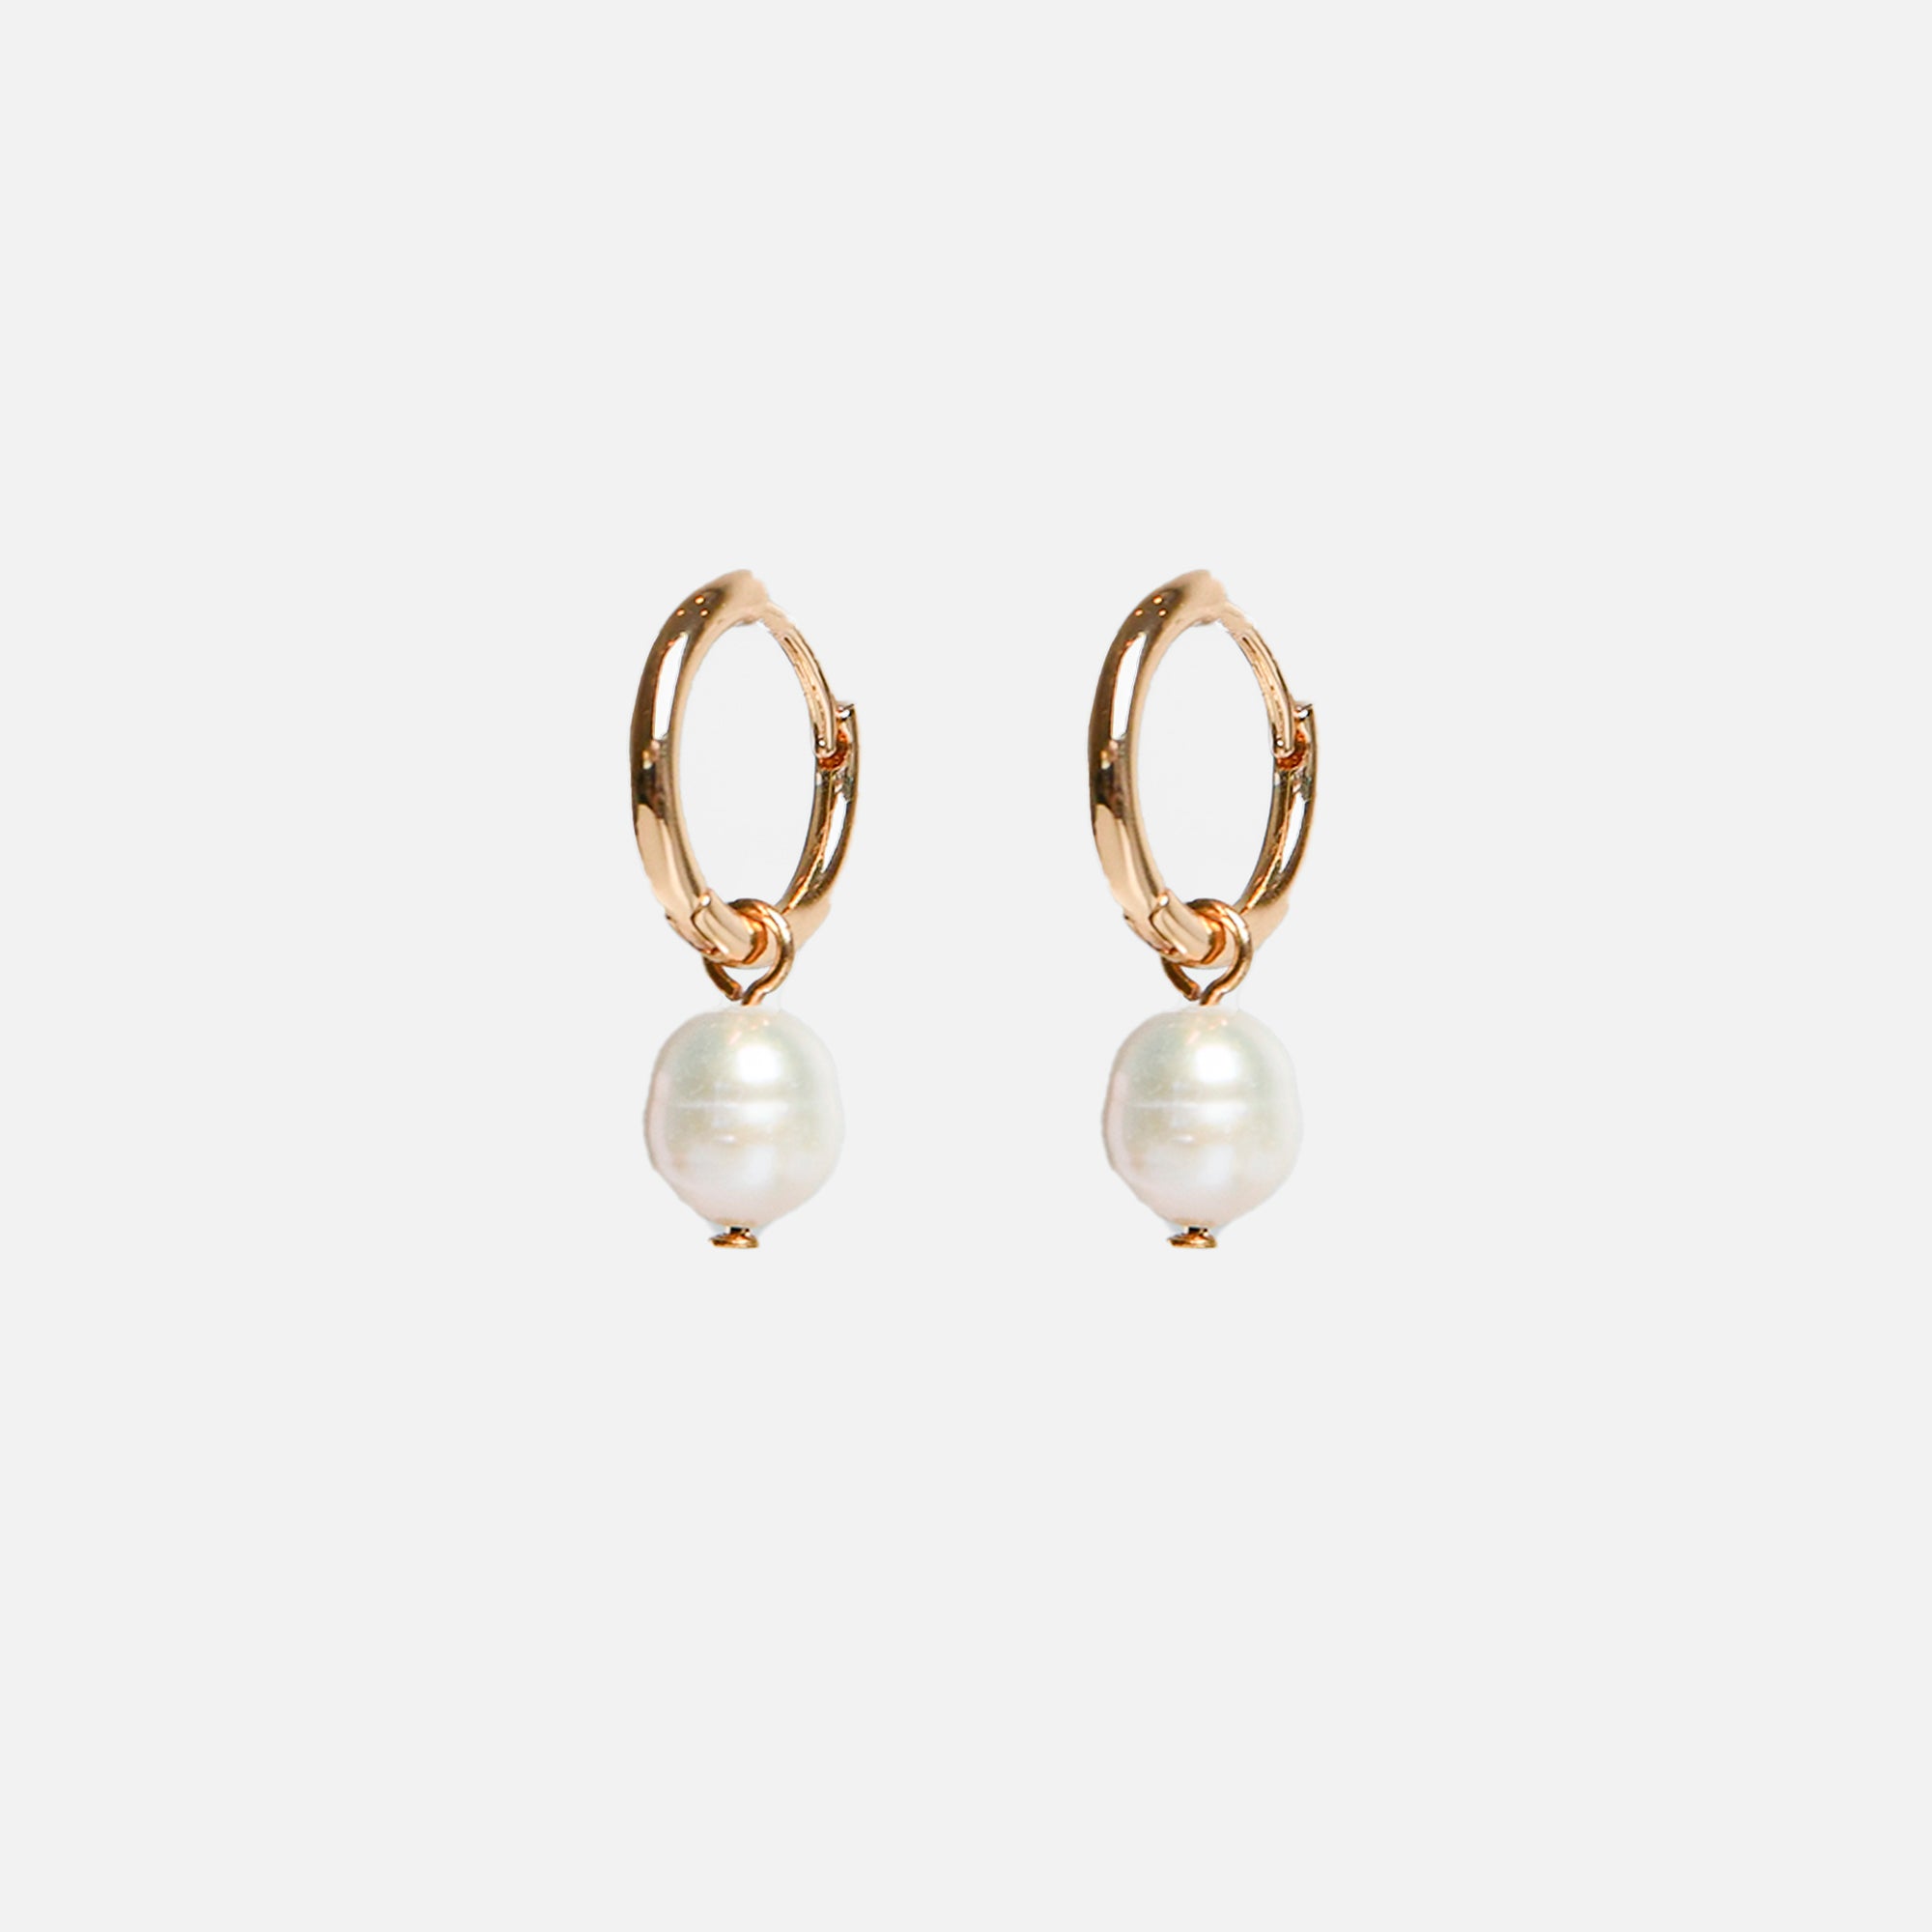 Boucles d’oreilles anneaux dorée avec perle